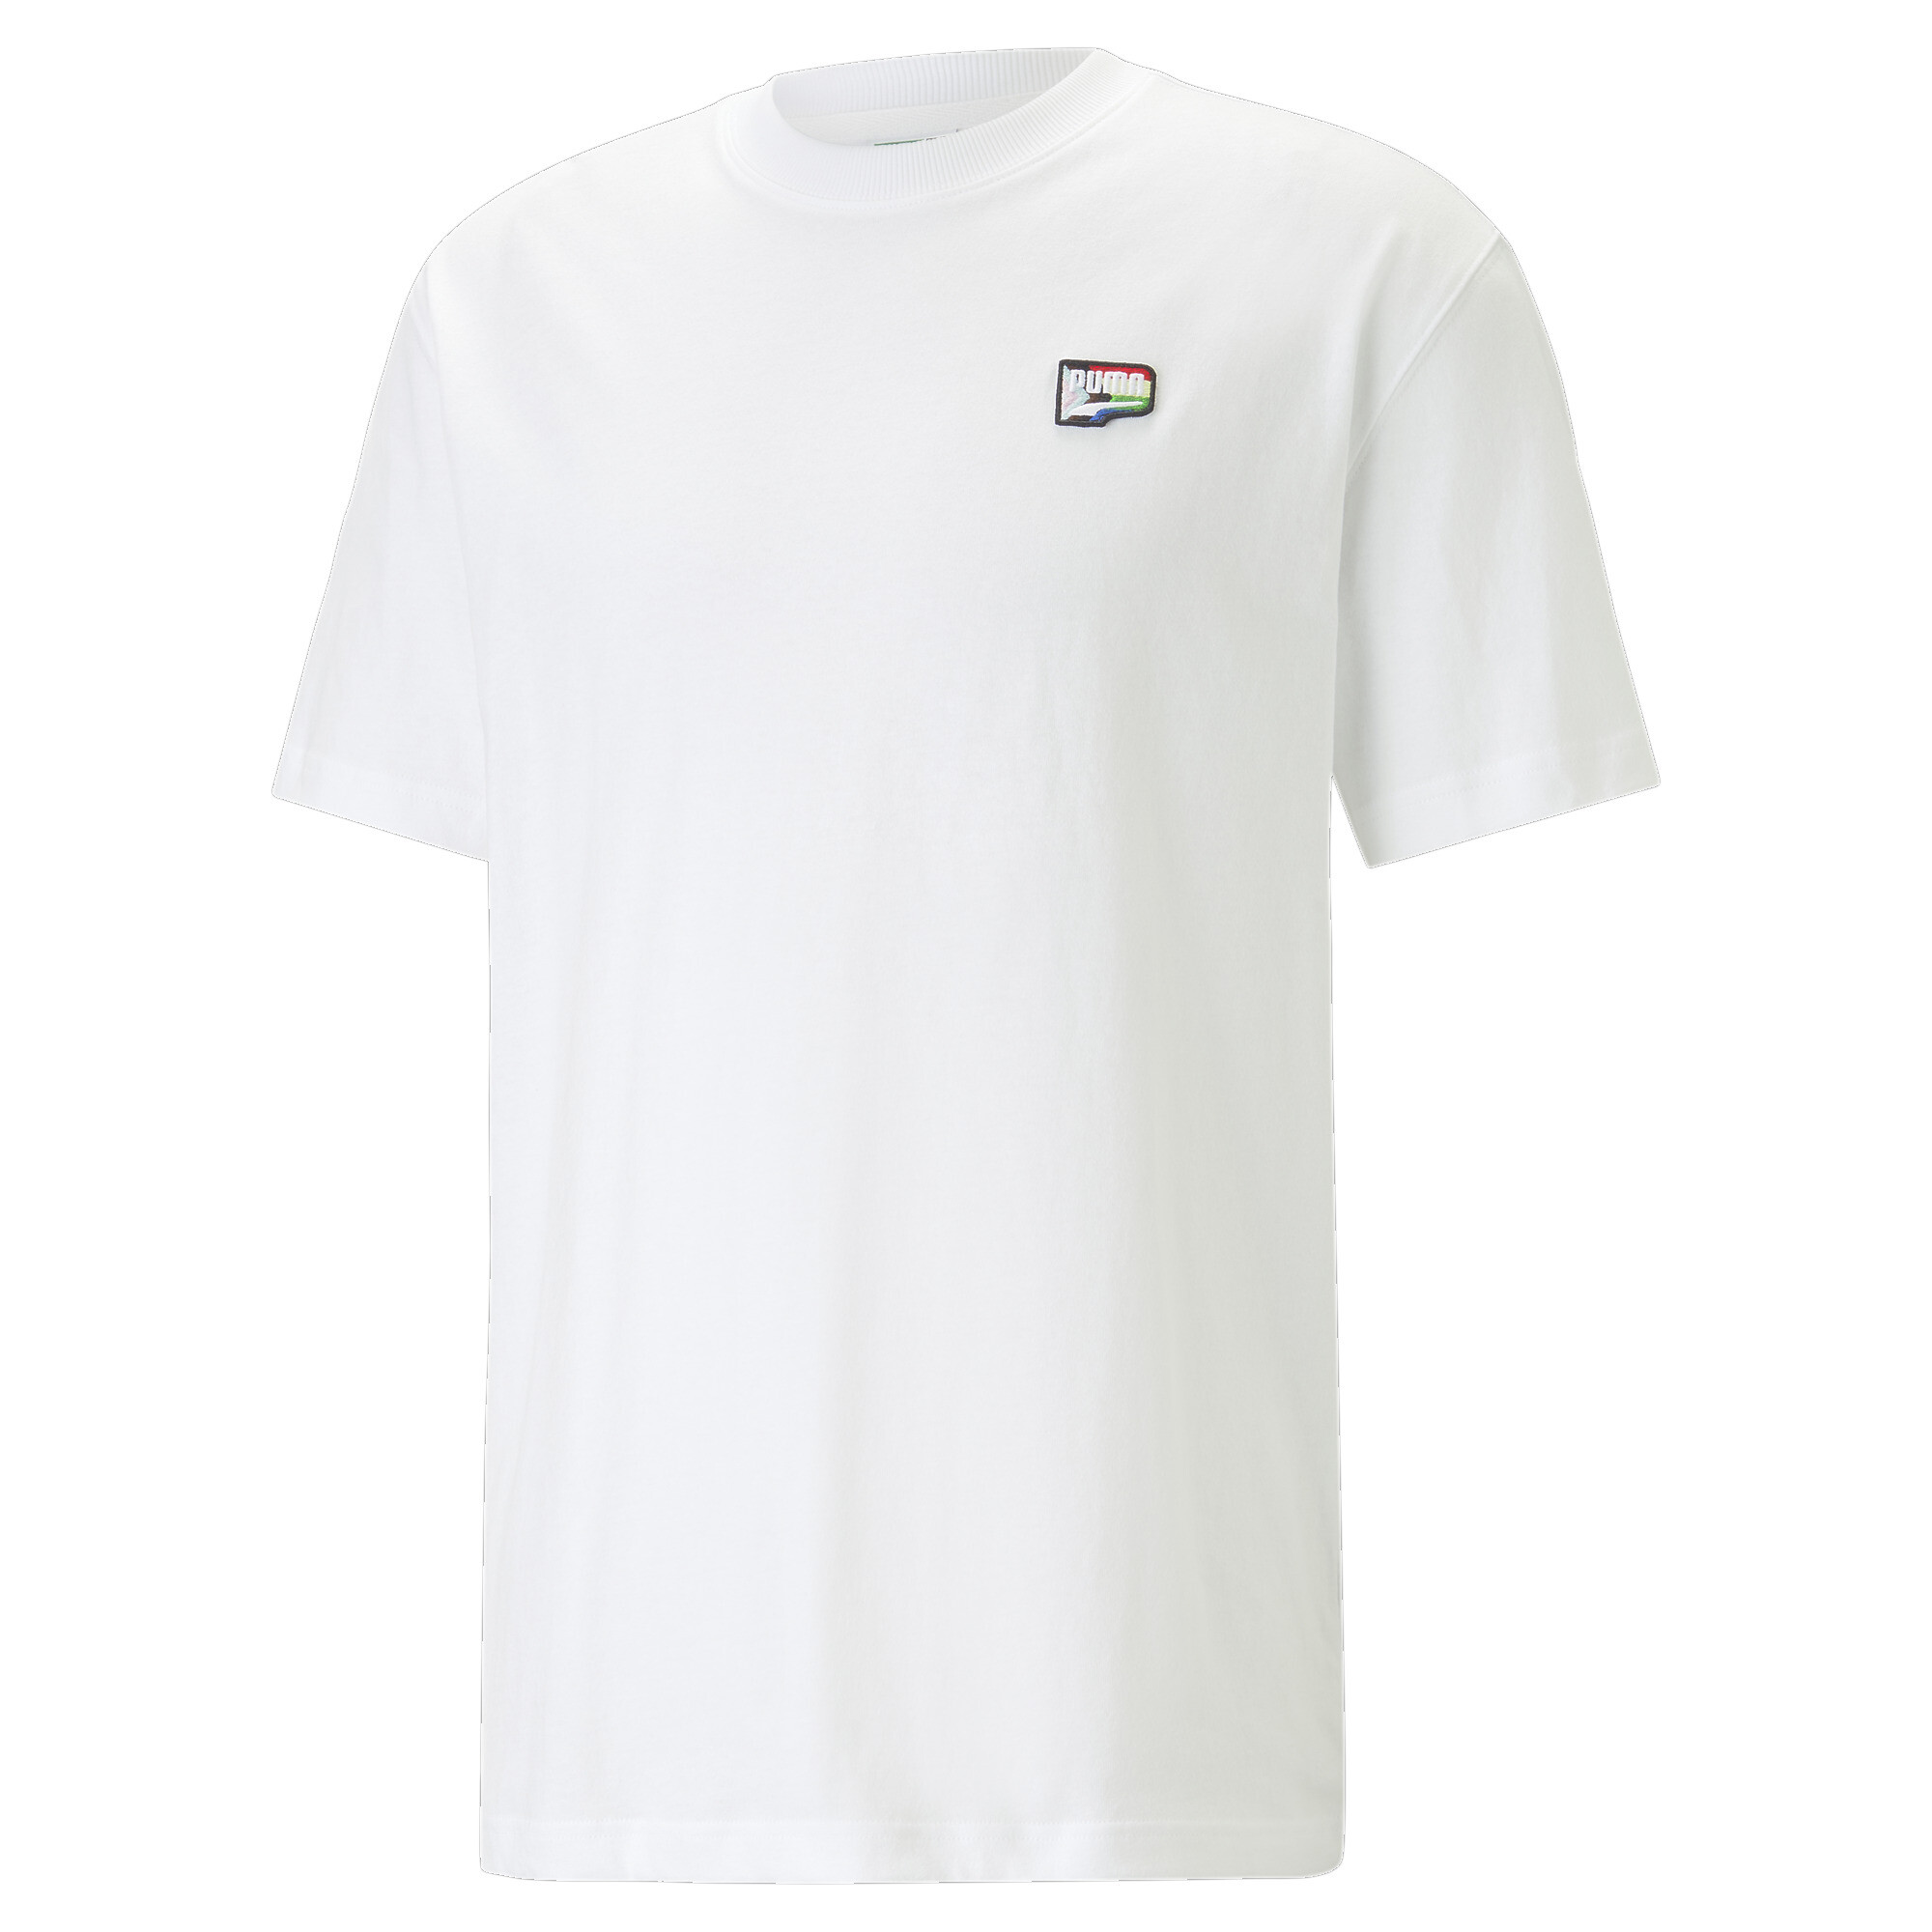 ＜プーマ公式通販＞ プーマ ユニセックス PUMA x KOCHE グラフィック 半袖 Tシャツ ユニセックス PUMA White ｜PUMA.com